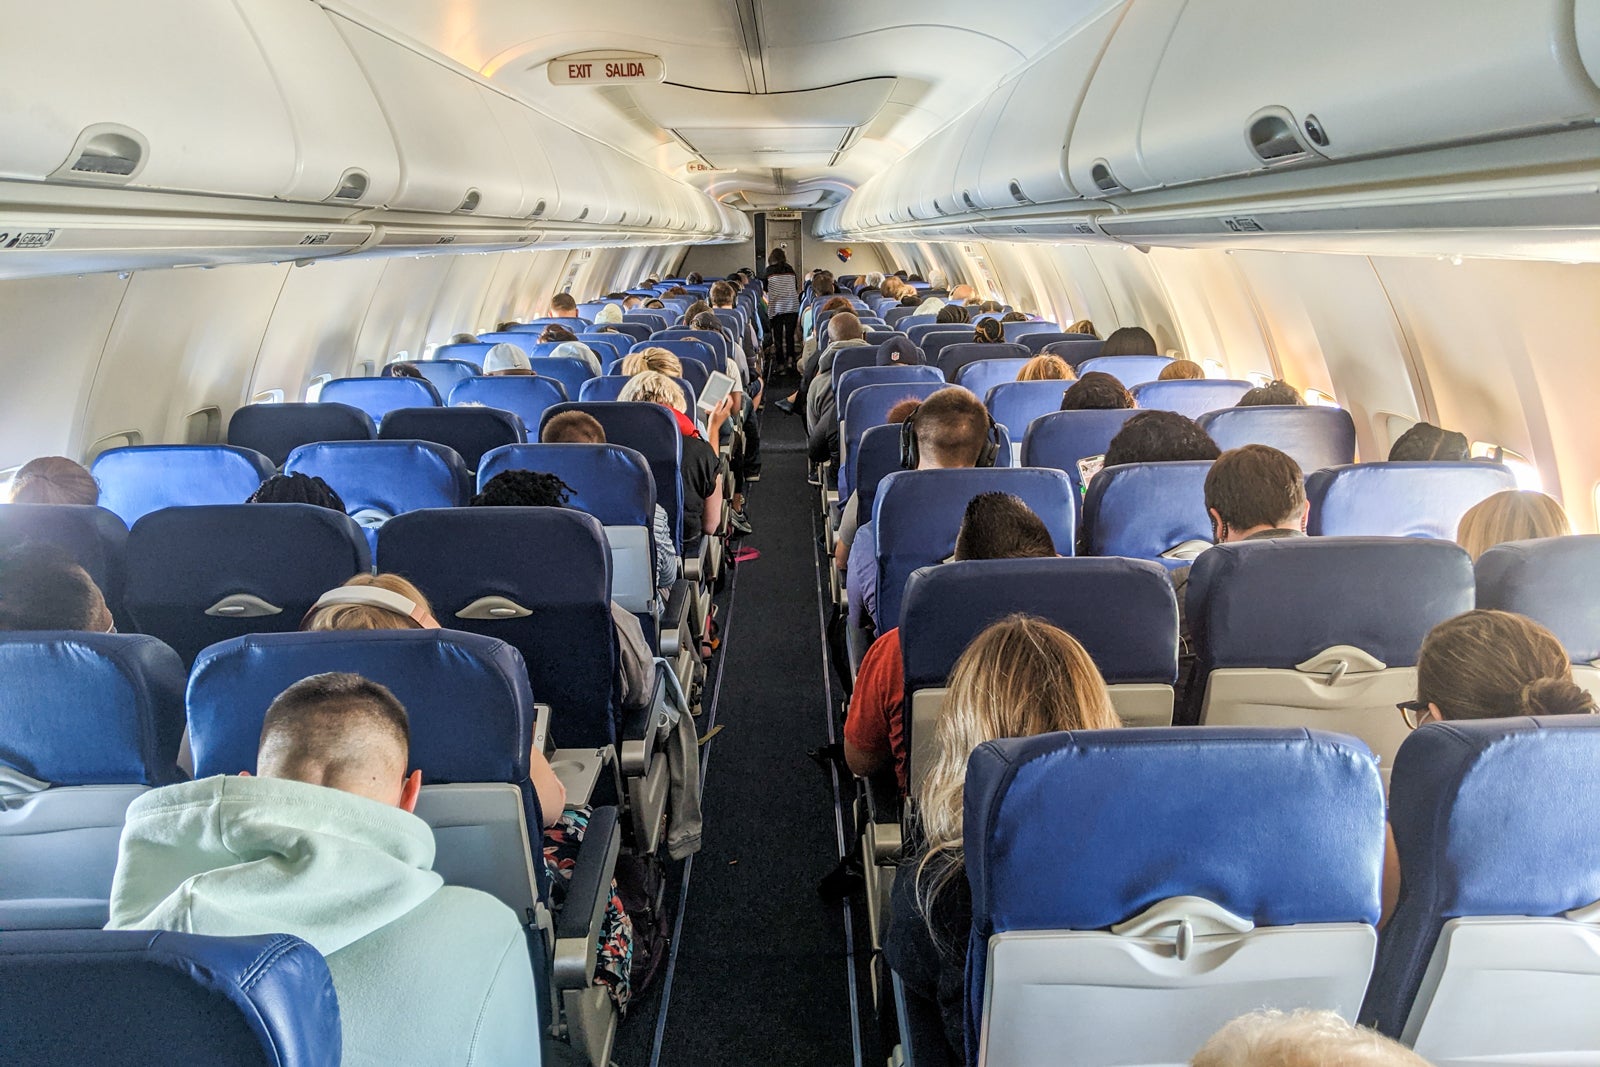 Onboard a Southwest flight